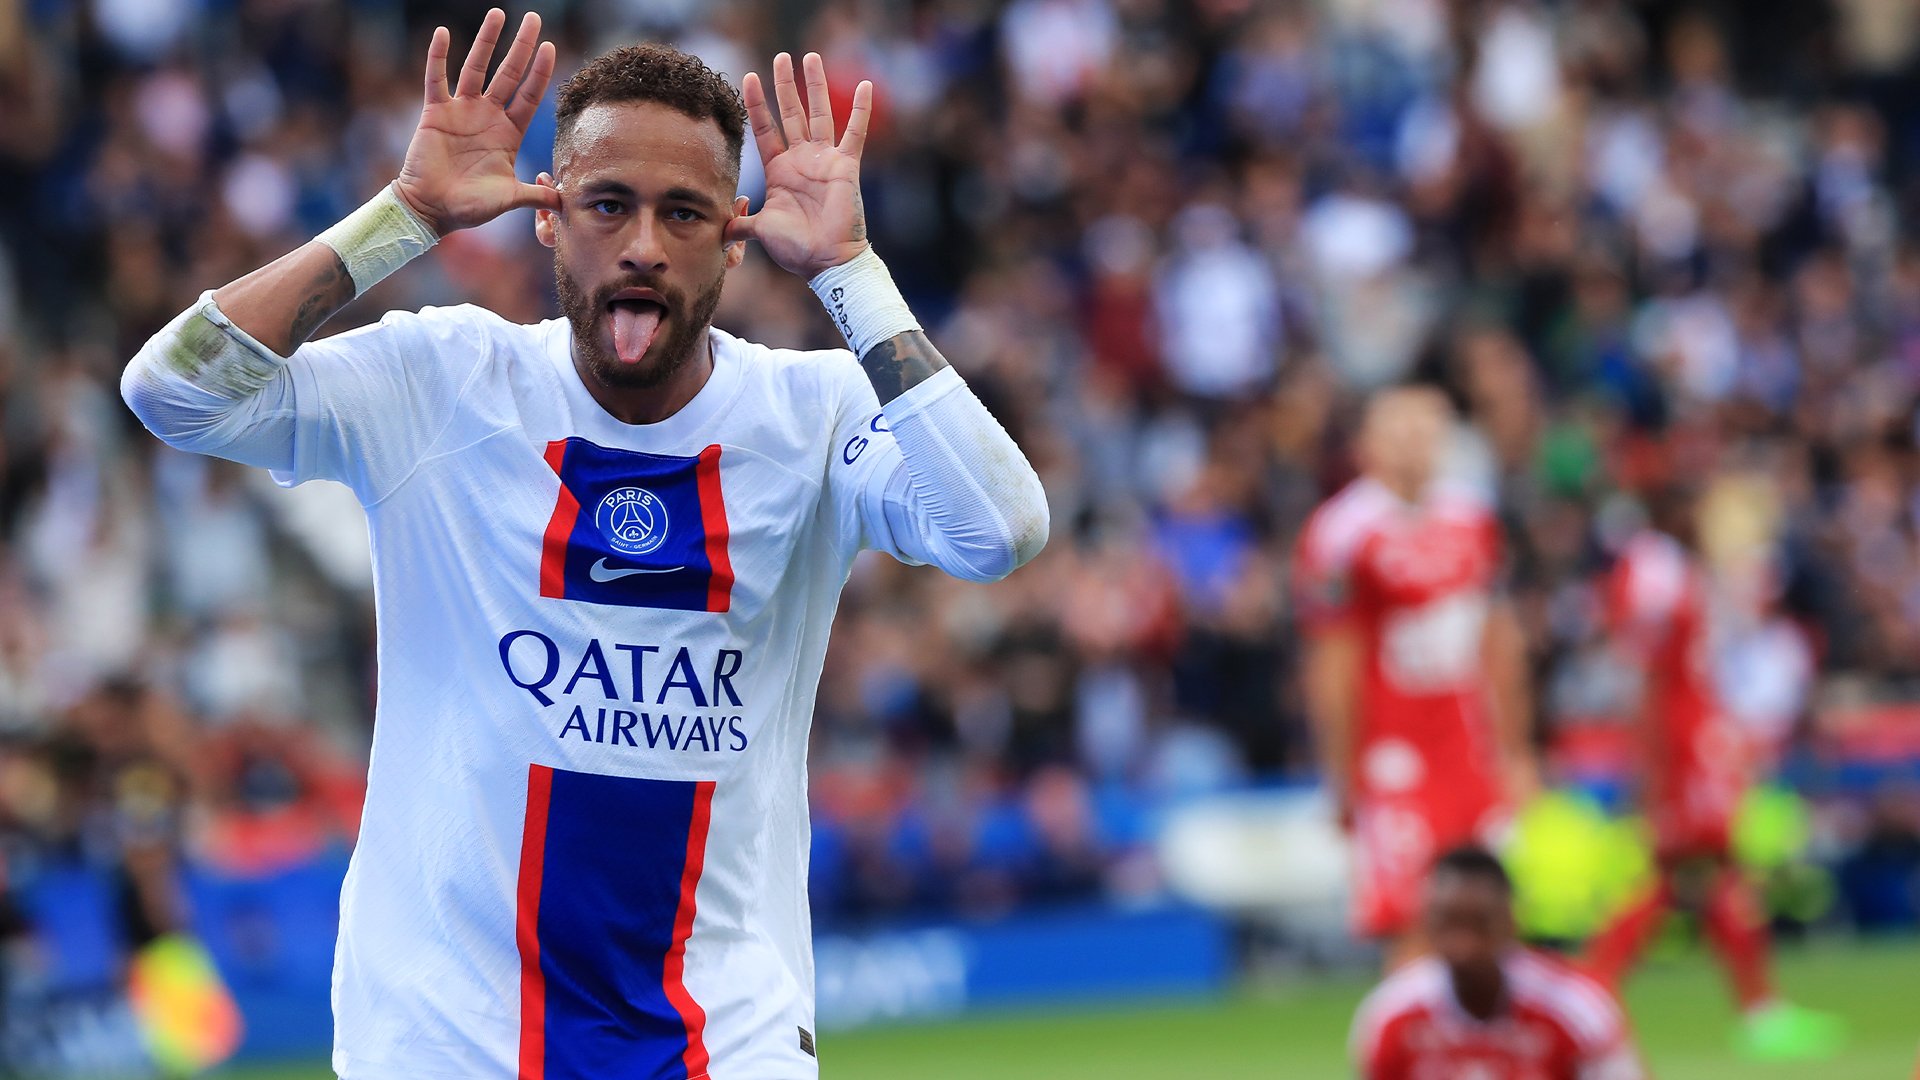 Foot PSG - PSG : Neymar s'offre une énorme fête d'anniversaire, on n'est  pas invité - Foot 01